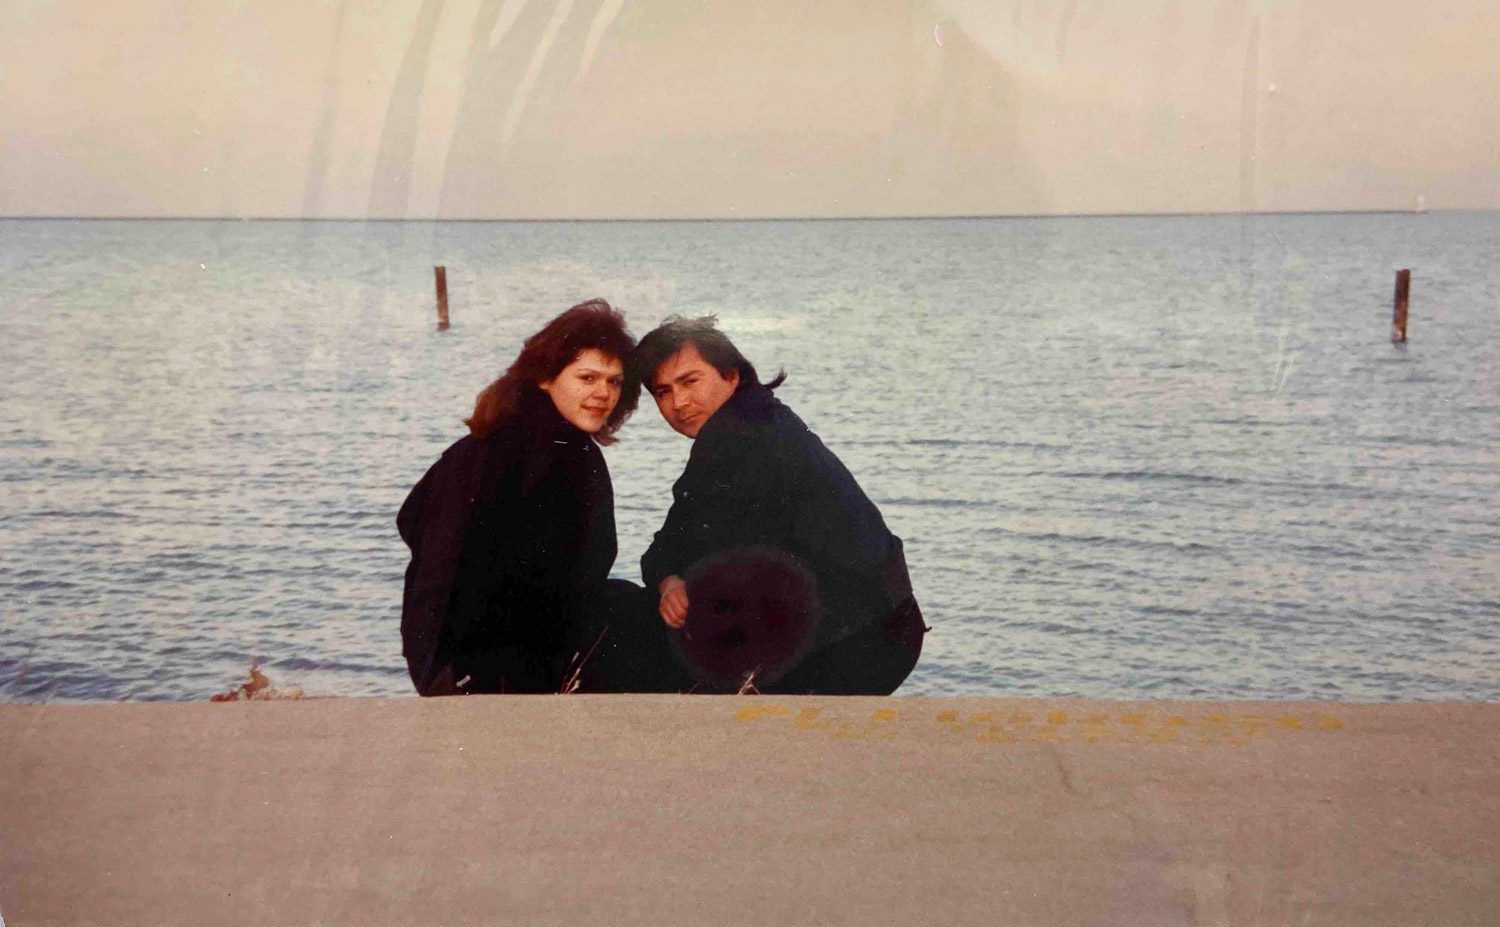 Rosa María Borjón y José Juan Borjón apoyados el uno en el otro en un día frío en el lago Michigan en Chicago